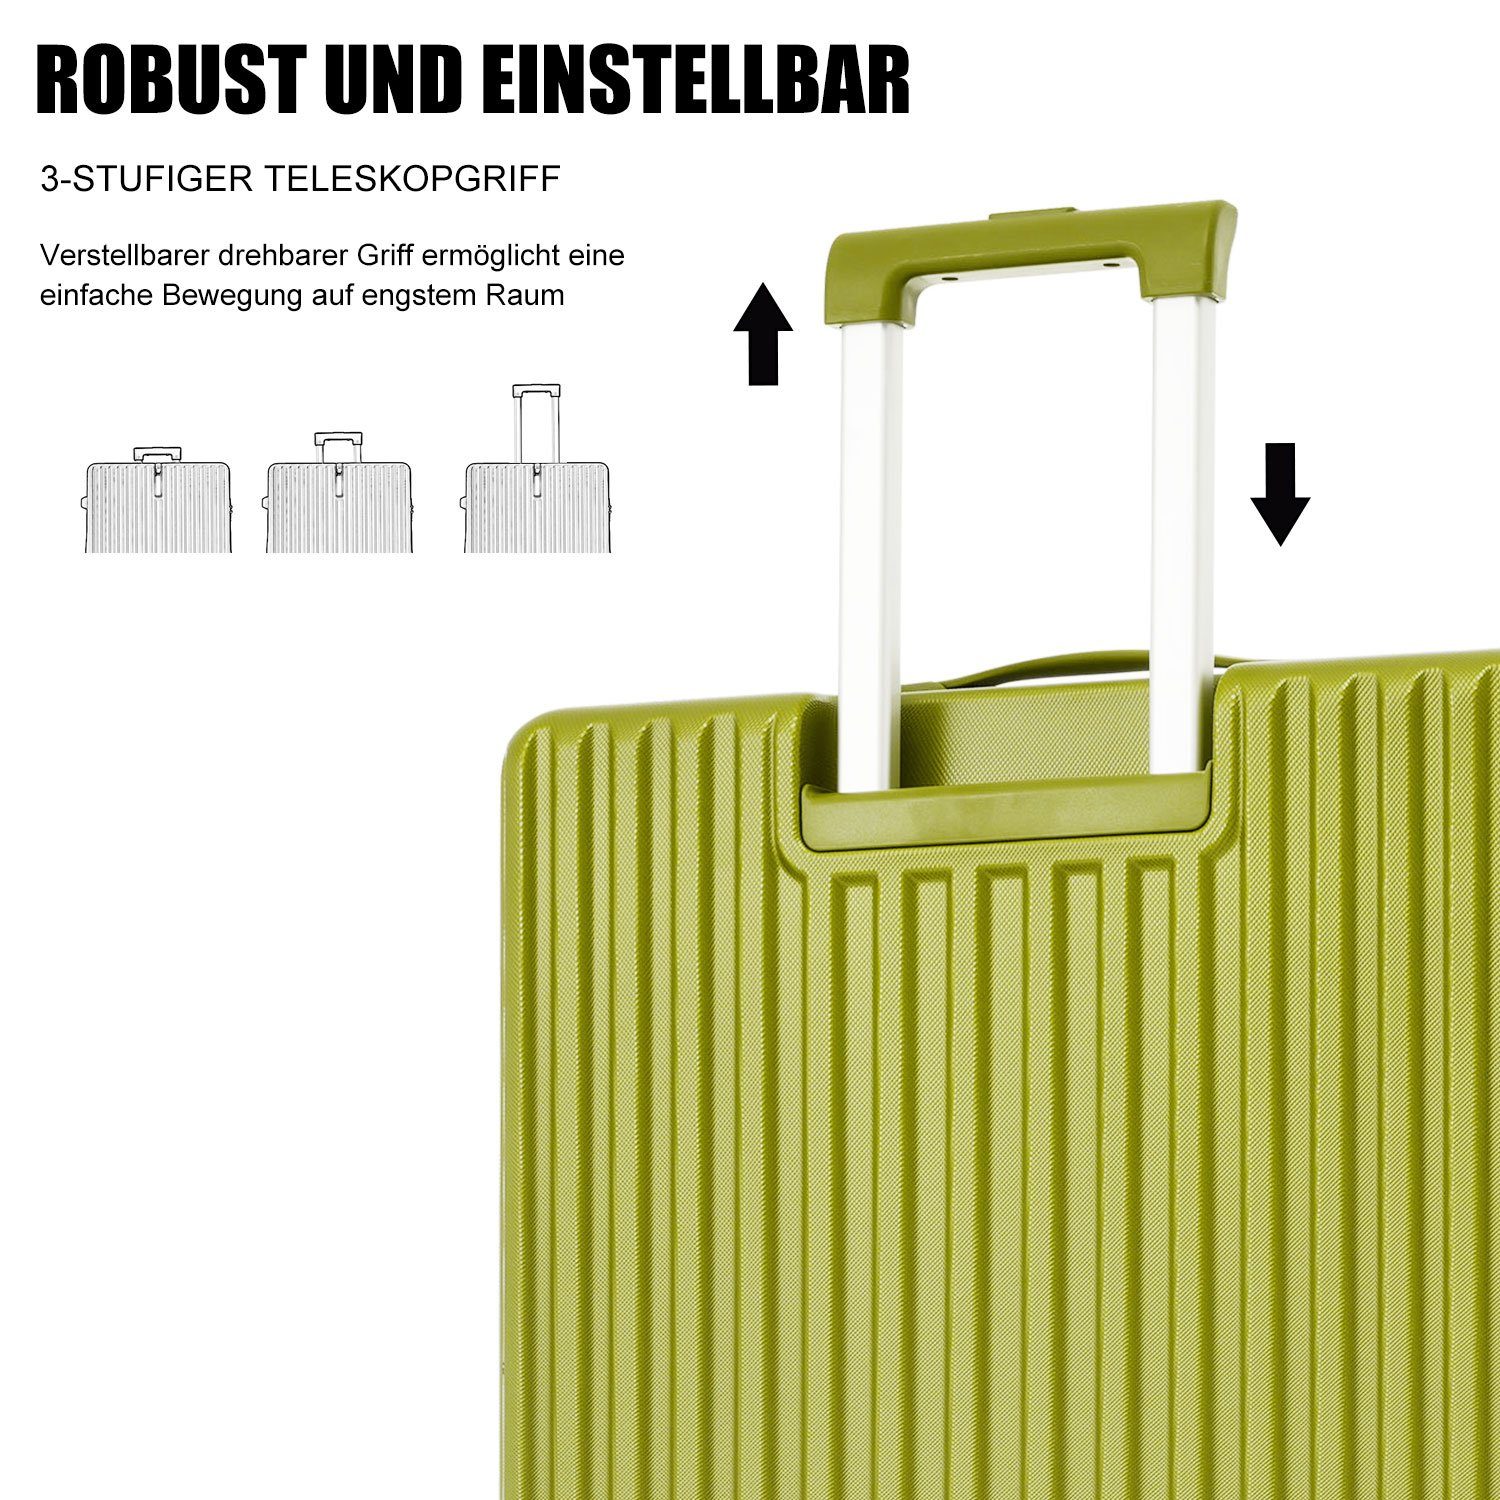 Kofferset Rollen, Ulife TSA tlg) ABS-Material, Zollschloss, Handgepäck Grün Trolleyset Reisekoffer (3 4